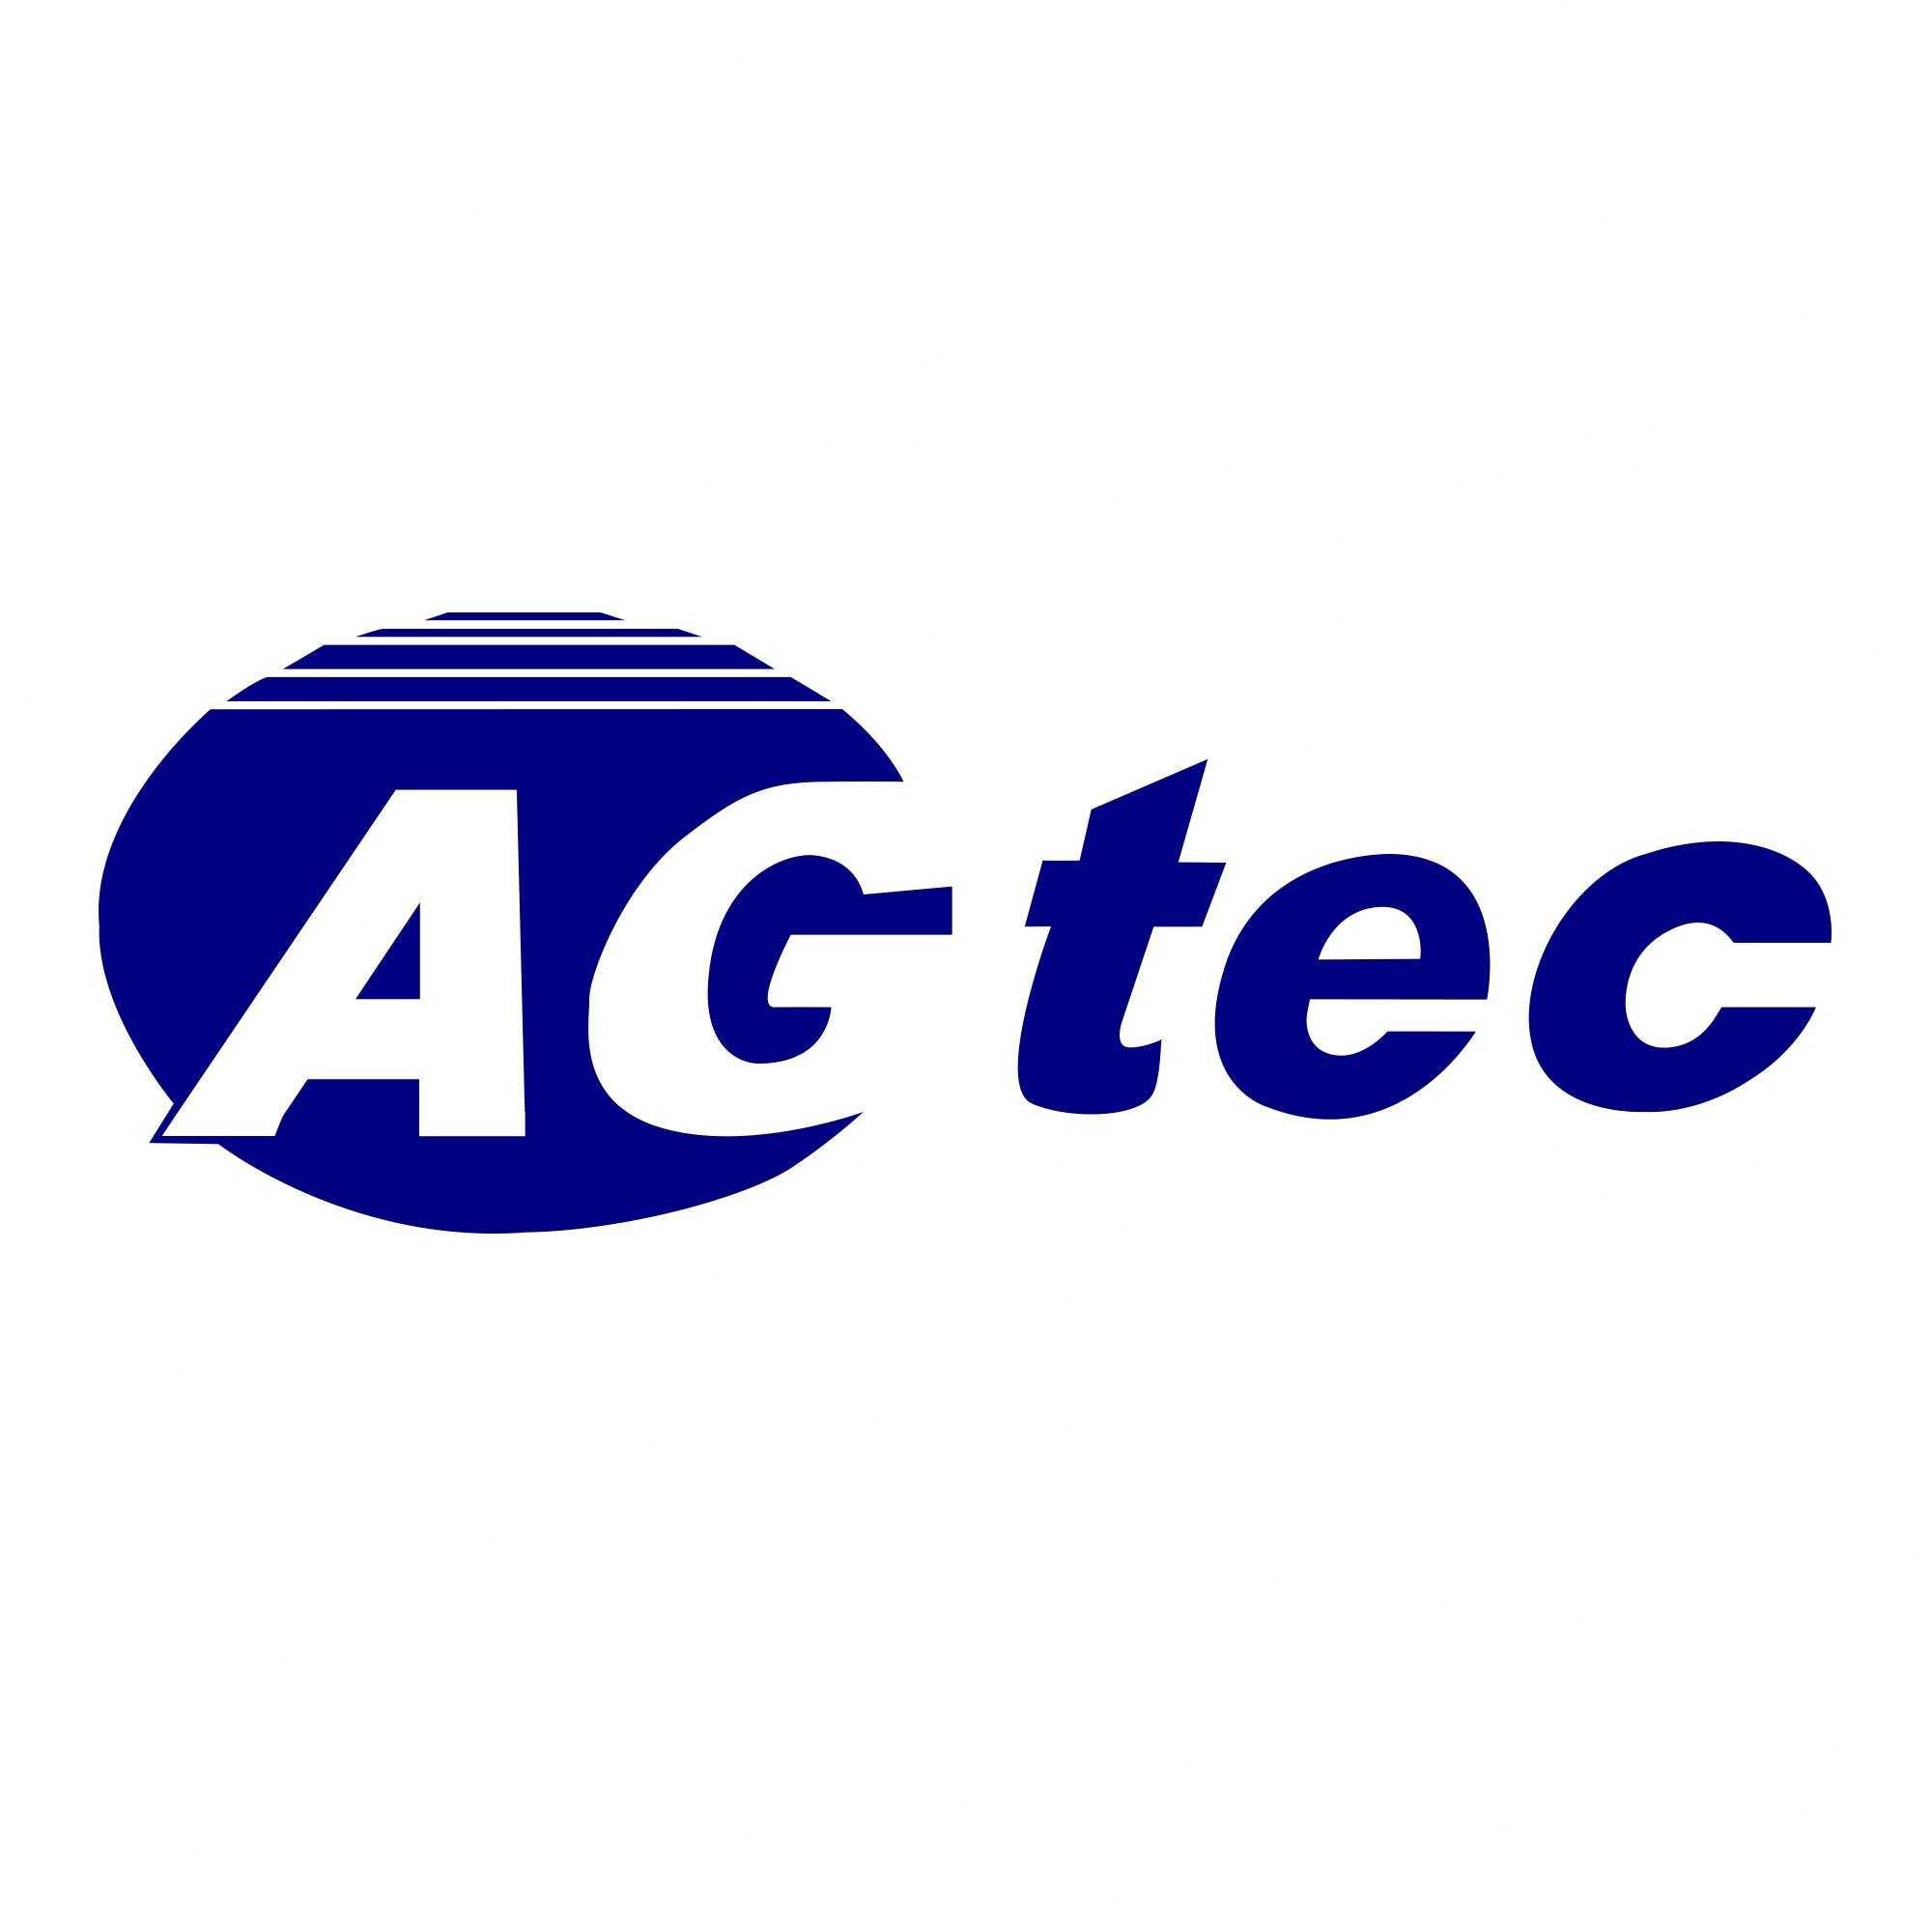 AGTEC – Assistência Técnica em Geral